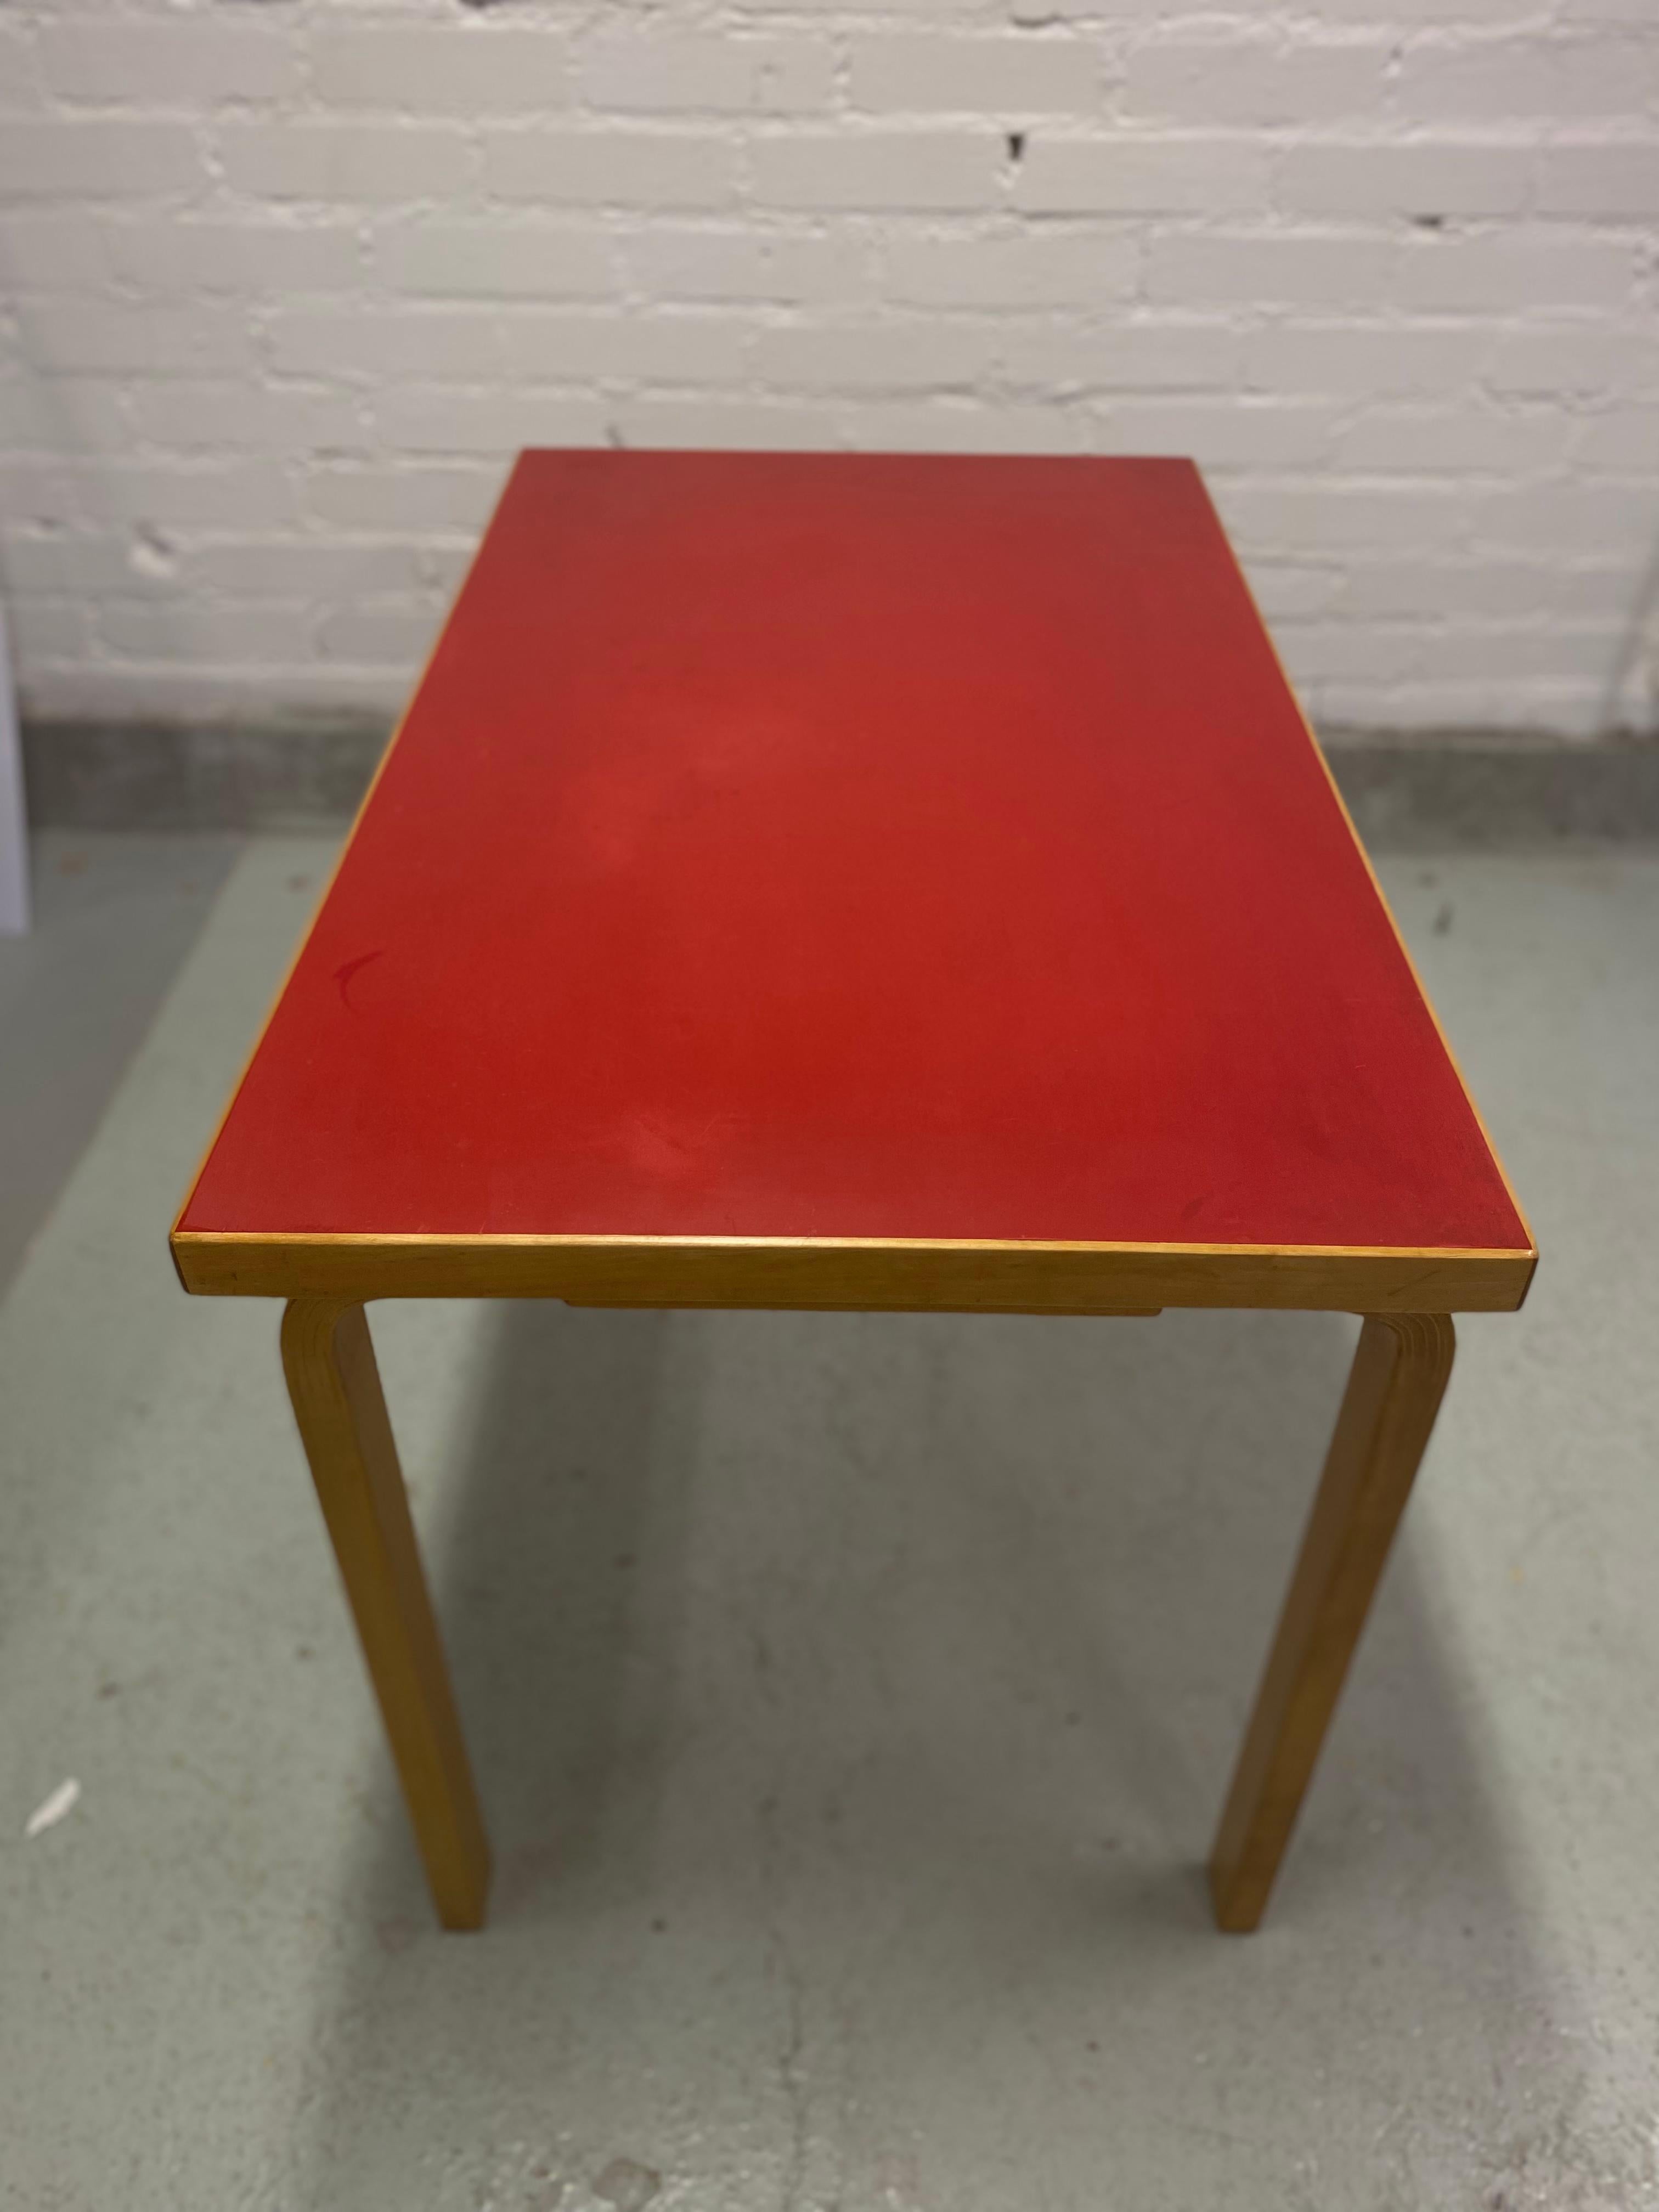 Table rectangulaire à pied en L d'Alvar Aalto avec plateau en linoléum rouge, fabriquée par Oy Huonekalu-ja Rakennustyötehdas Ab et commercialisée par Artek depuis les années 1930. 

Les designs d'Alvar Aalto sont célèbres dans le monde entier pour